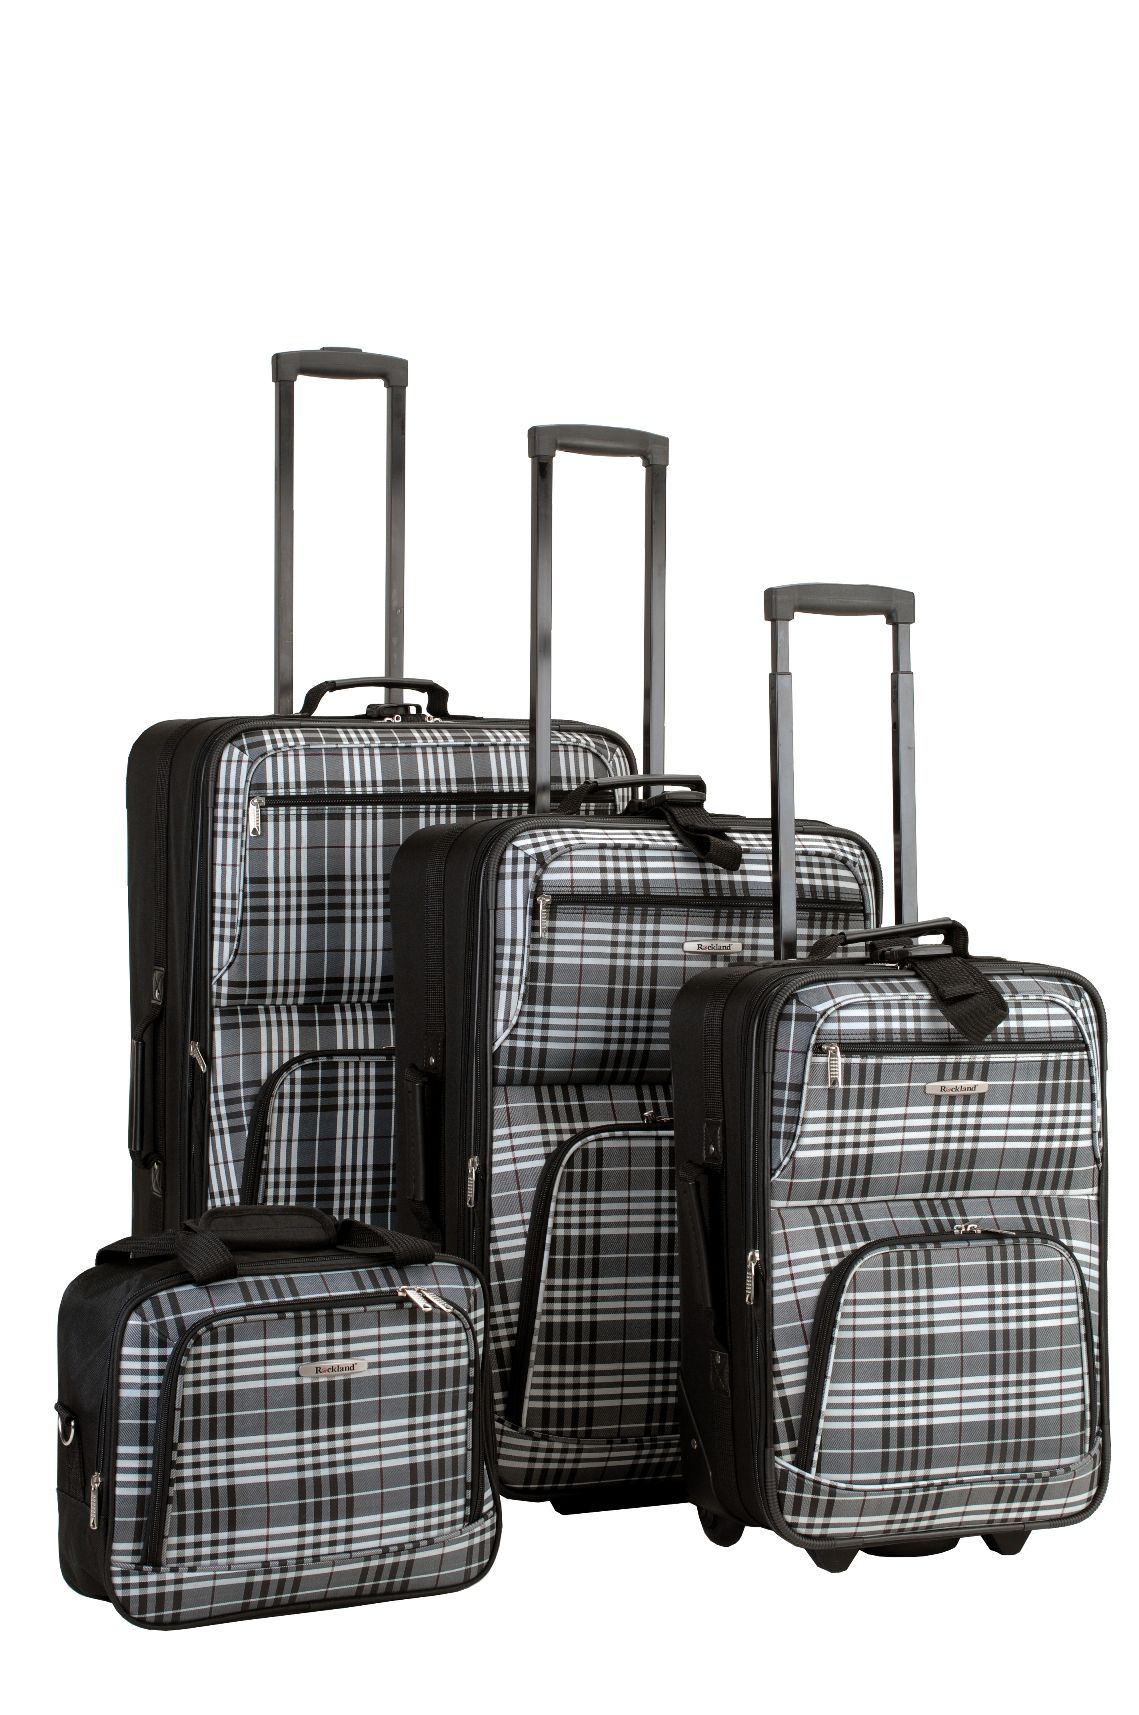 Rockland Fox Luggage Black Plaid 4 Pc Luggage Set